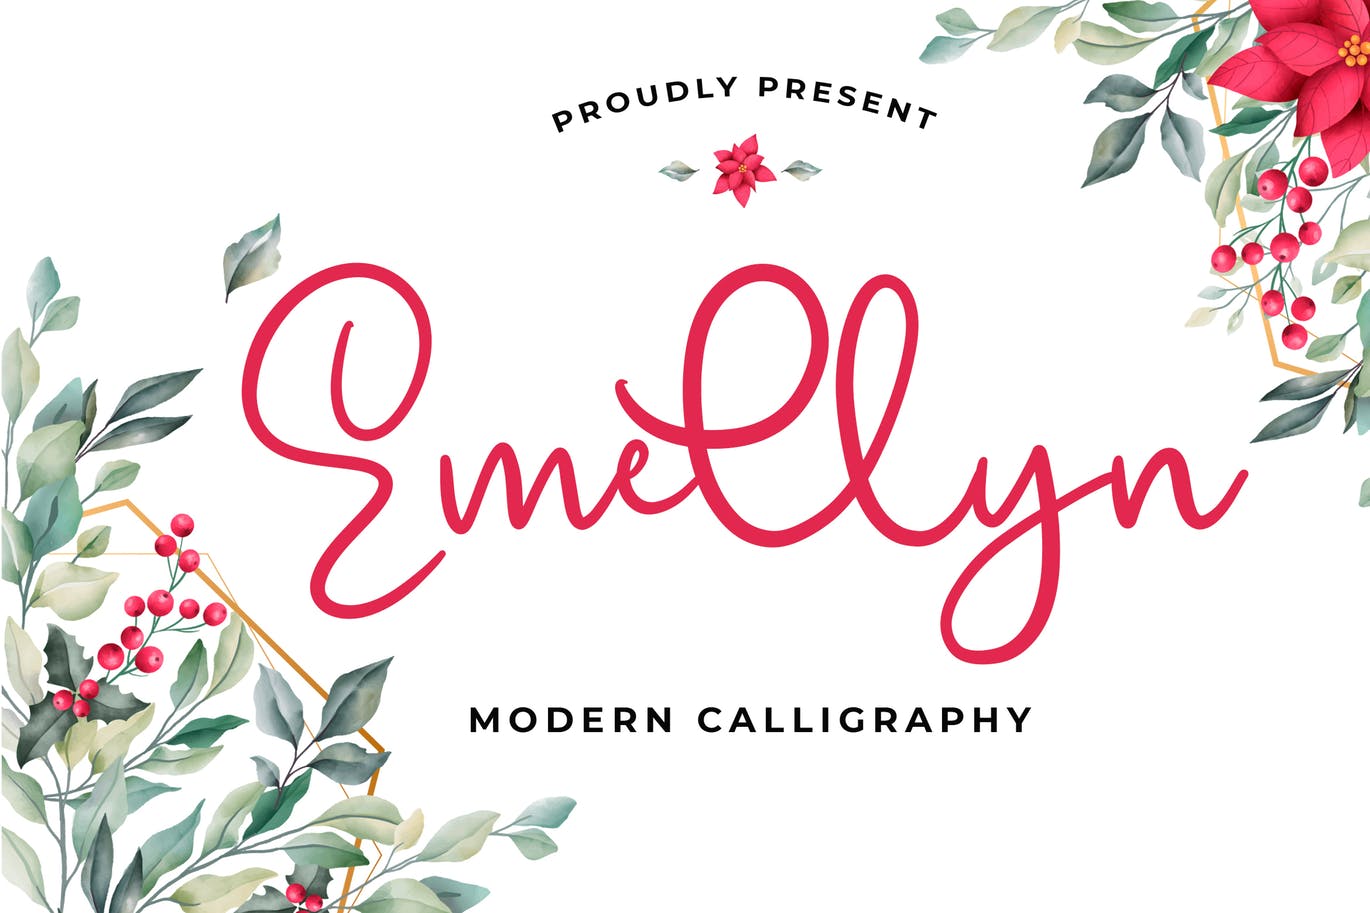 可爱风格英文现代书法字体蚂蚁素材精选 Emellyn Lovely Modern Calligraphy Font插图